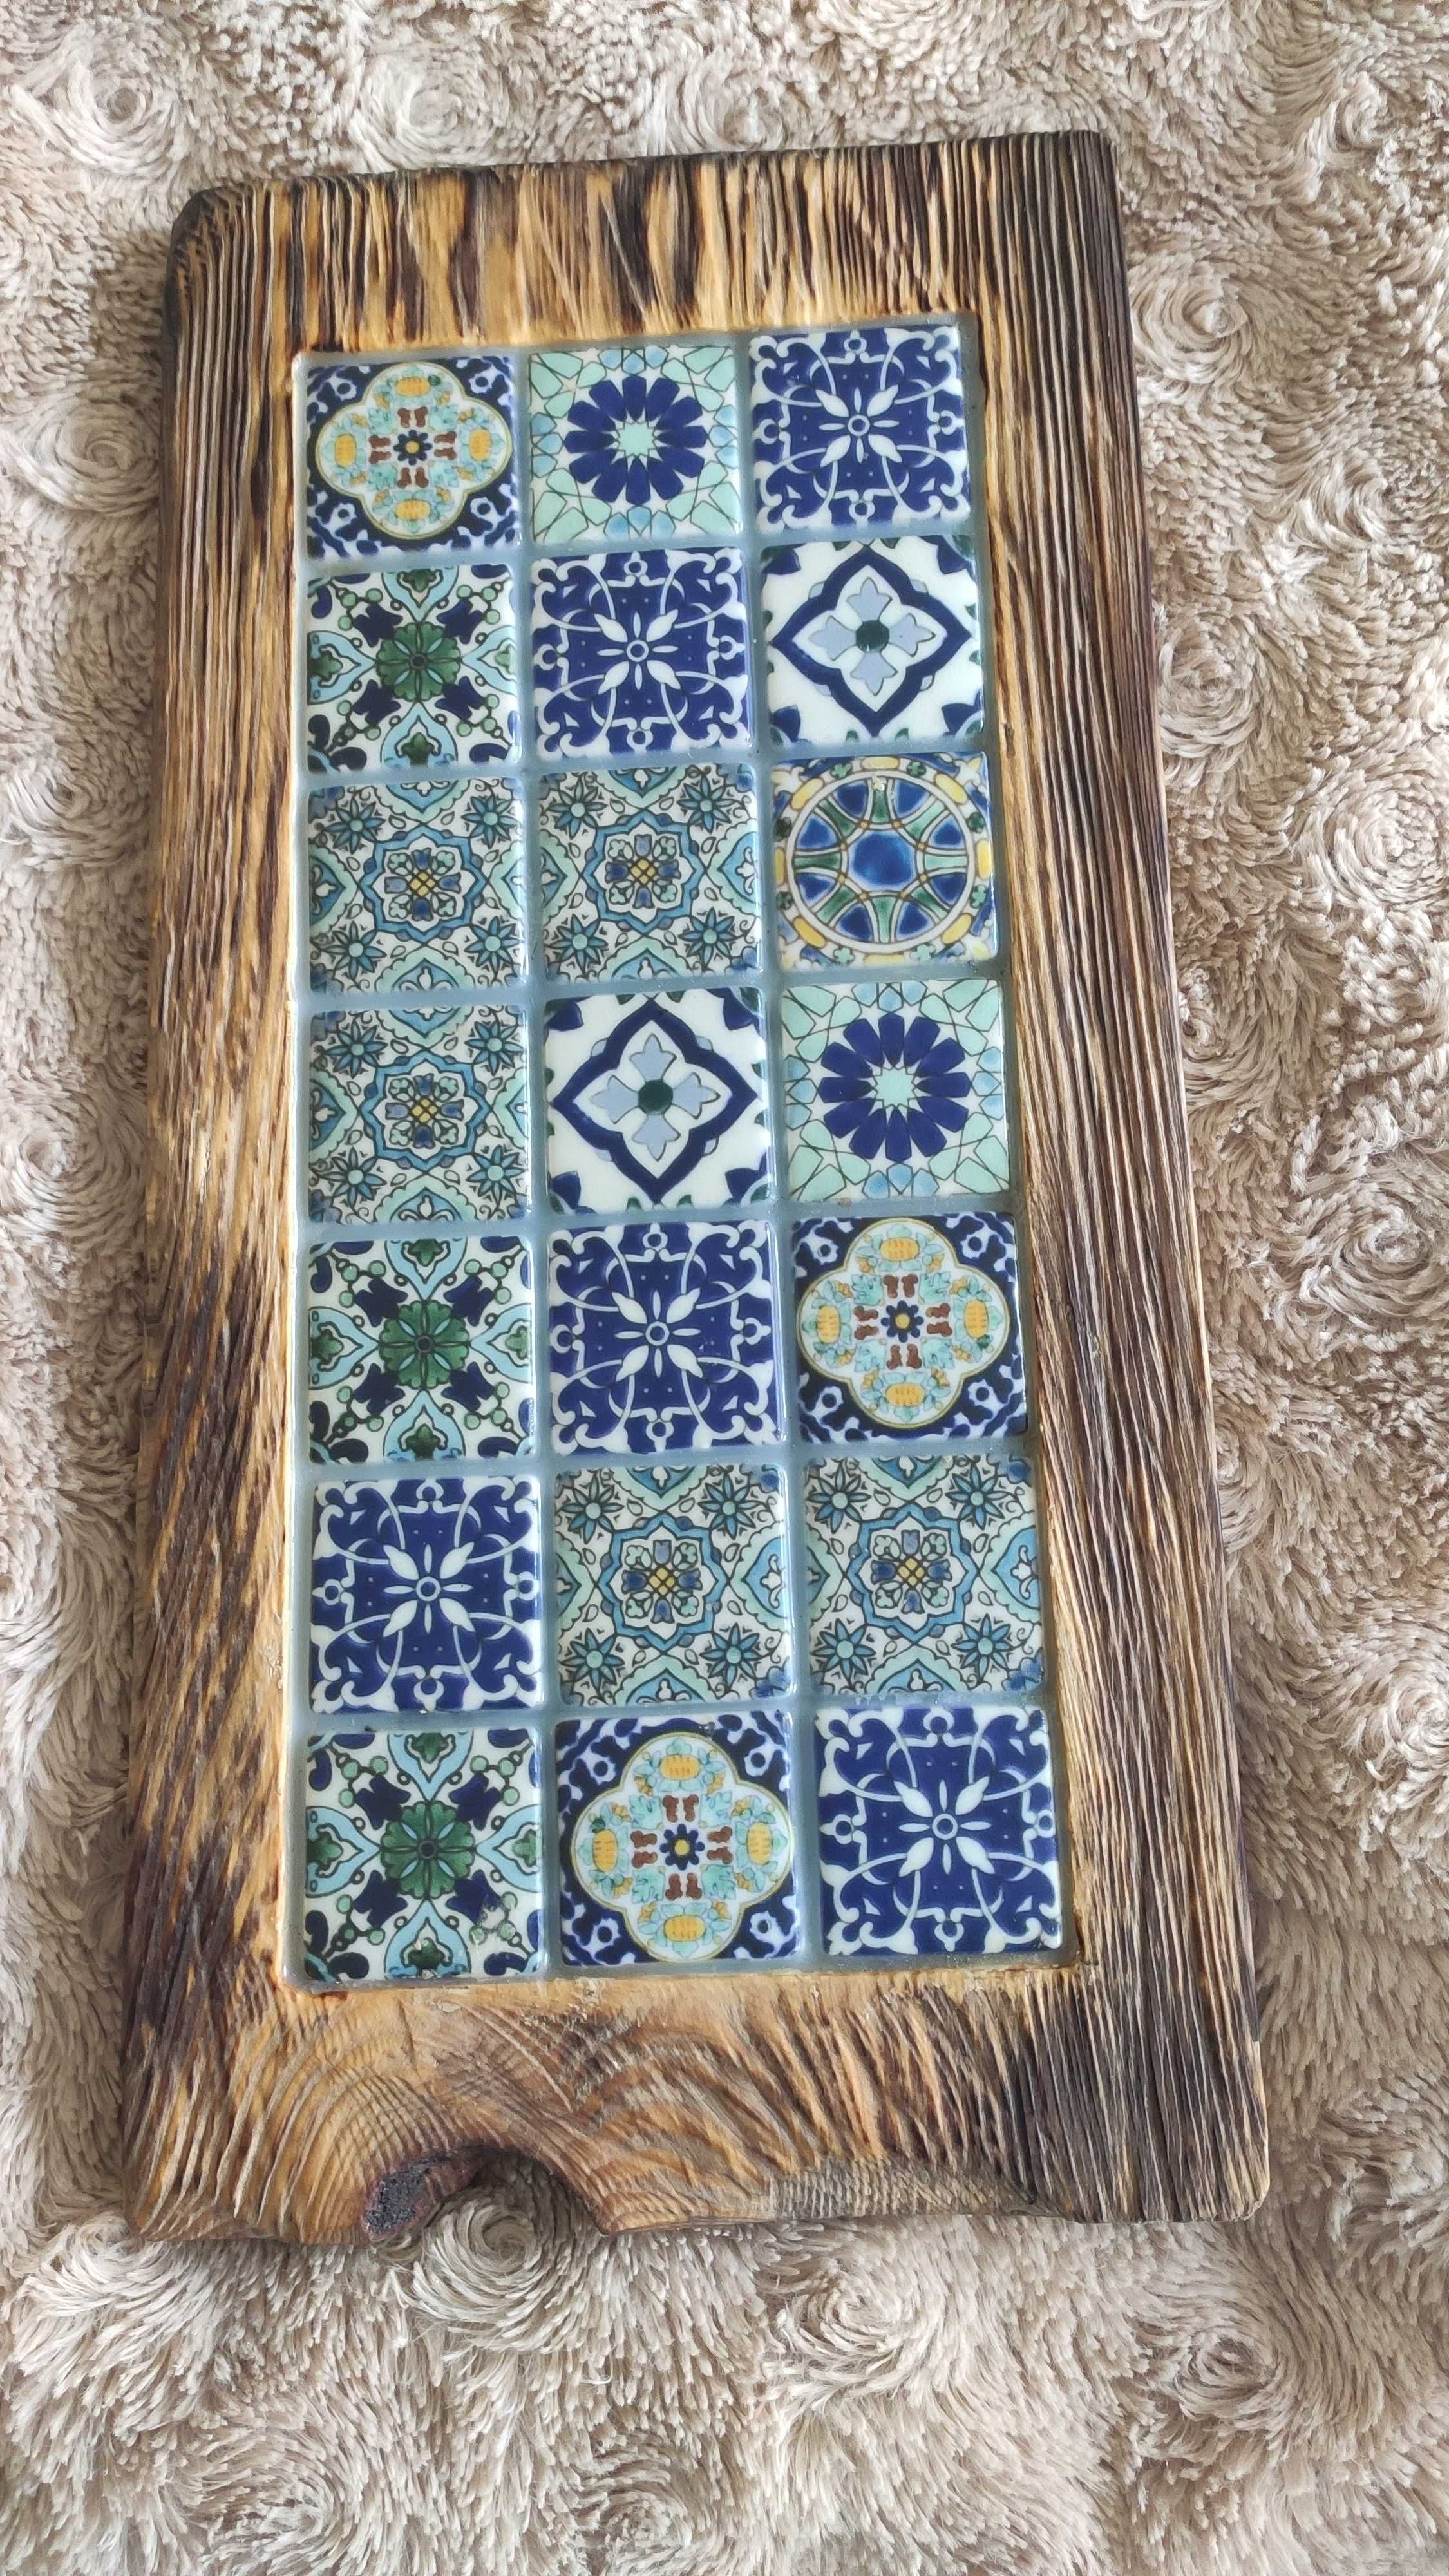 Deska do serwowania serów i wędlin z kafelkami w stylu azulejos